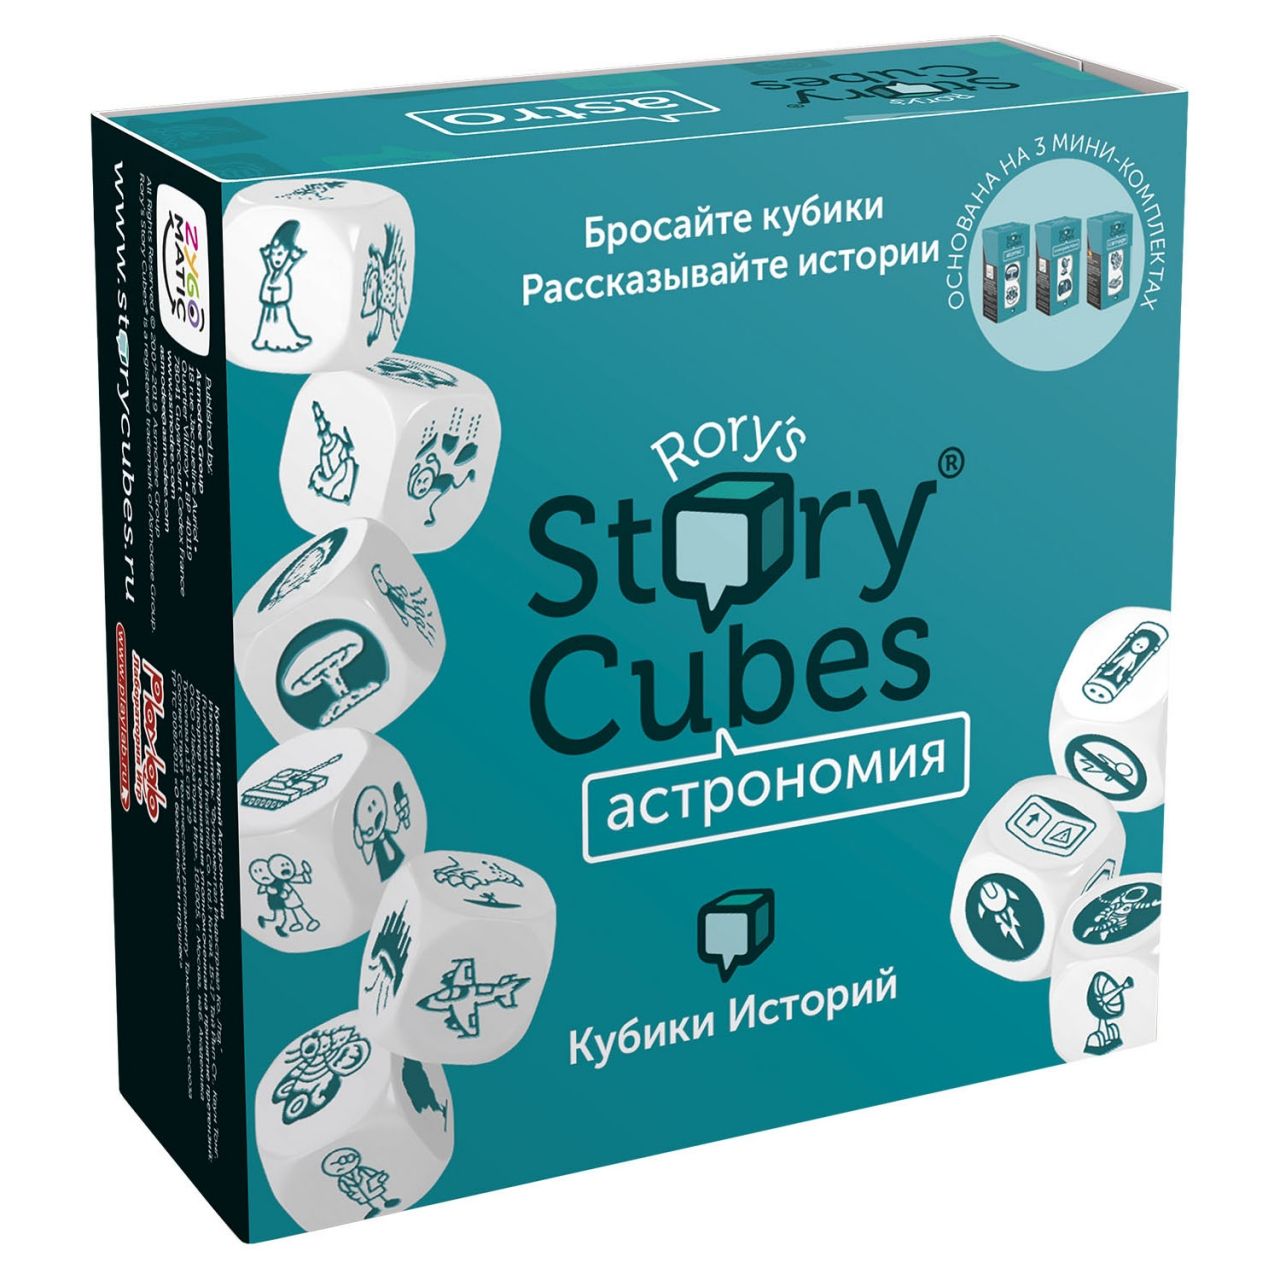 Настольная игра RORYS STORY CUBES RSC31 кубики историй Астрономия